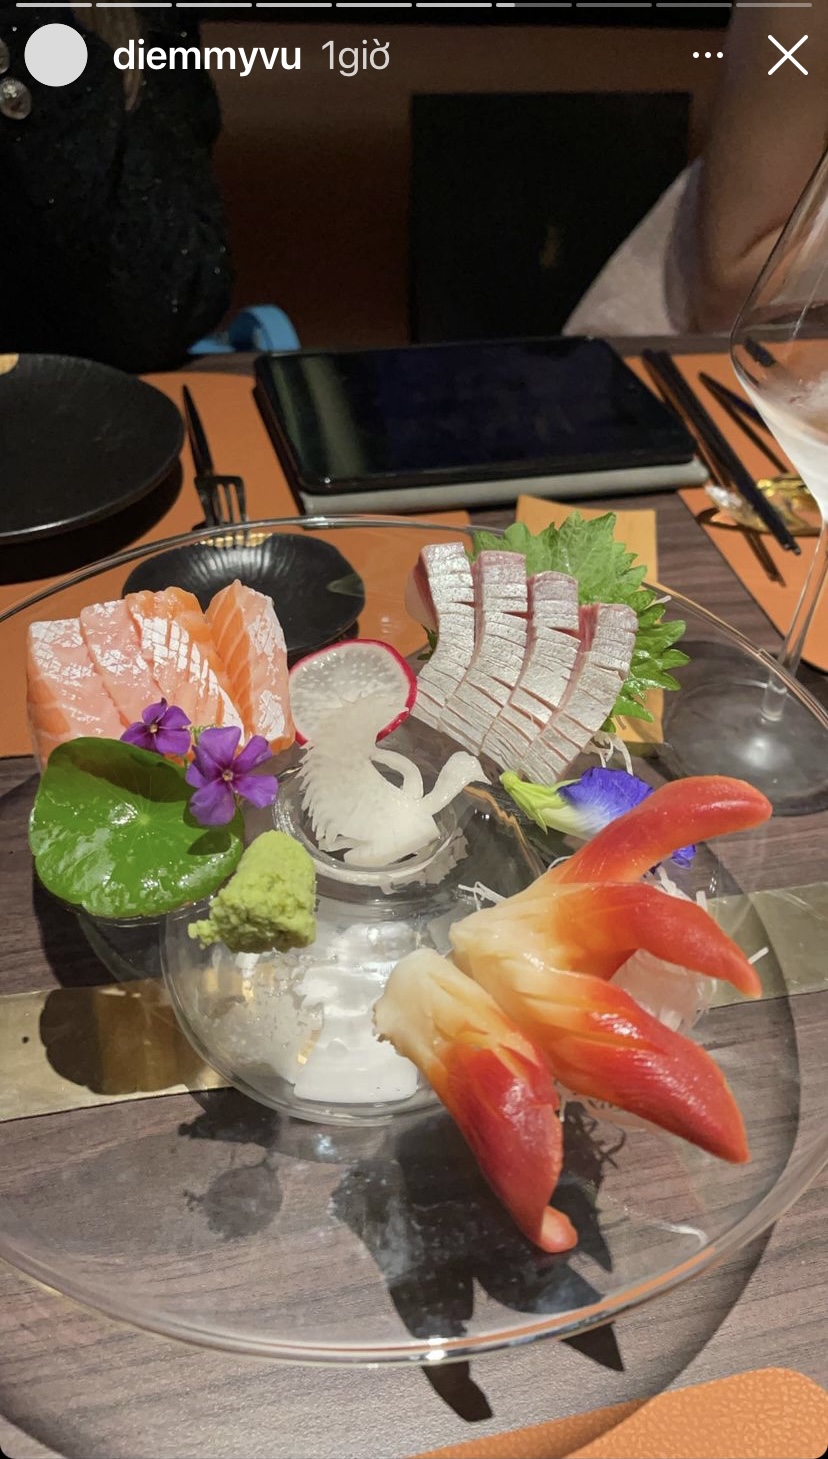 ... còn đây là những miếng sashimi tươi ngon và bổ dưỡng cho bữa tối của cô diễn viên 9X này.